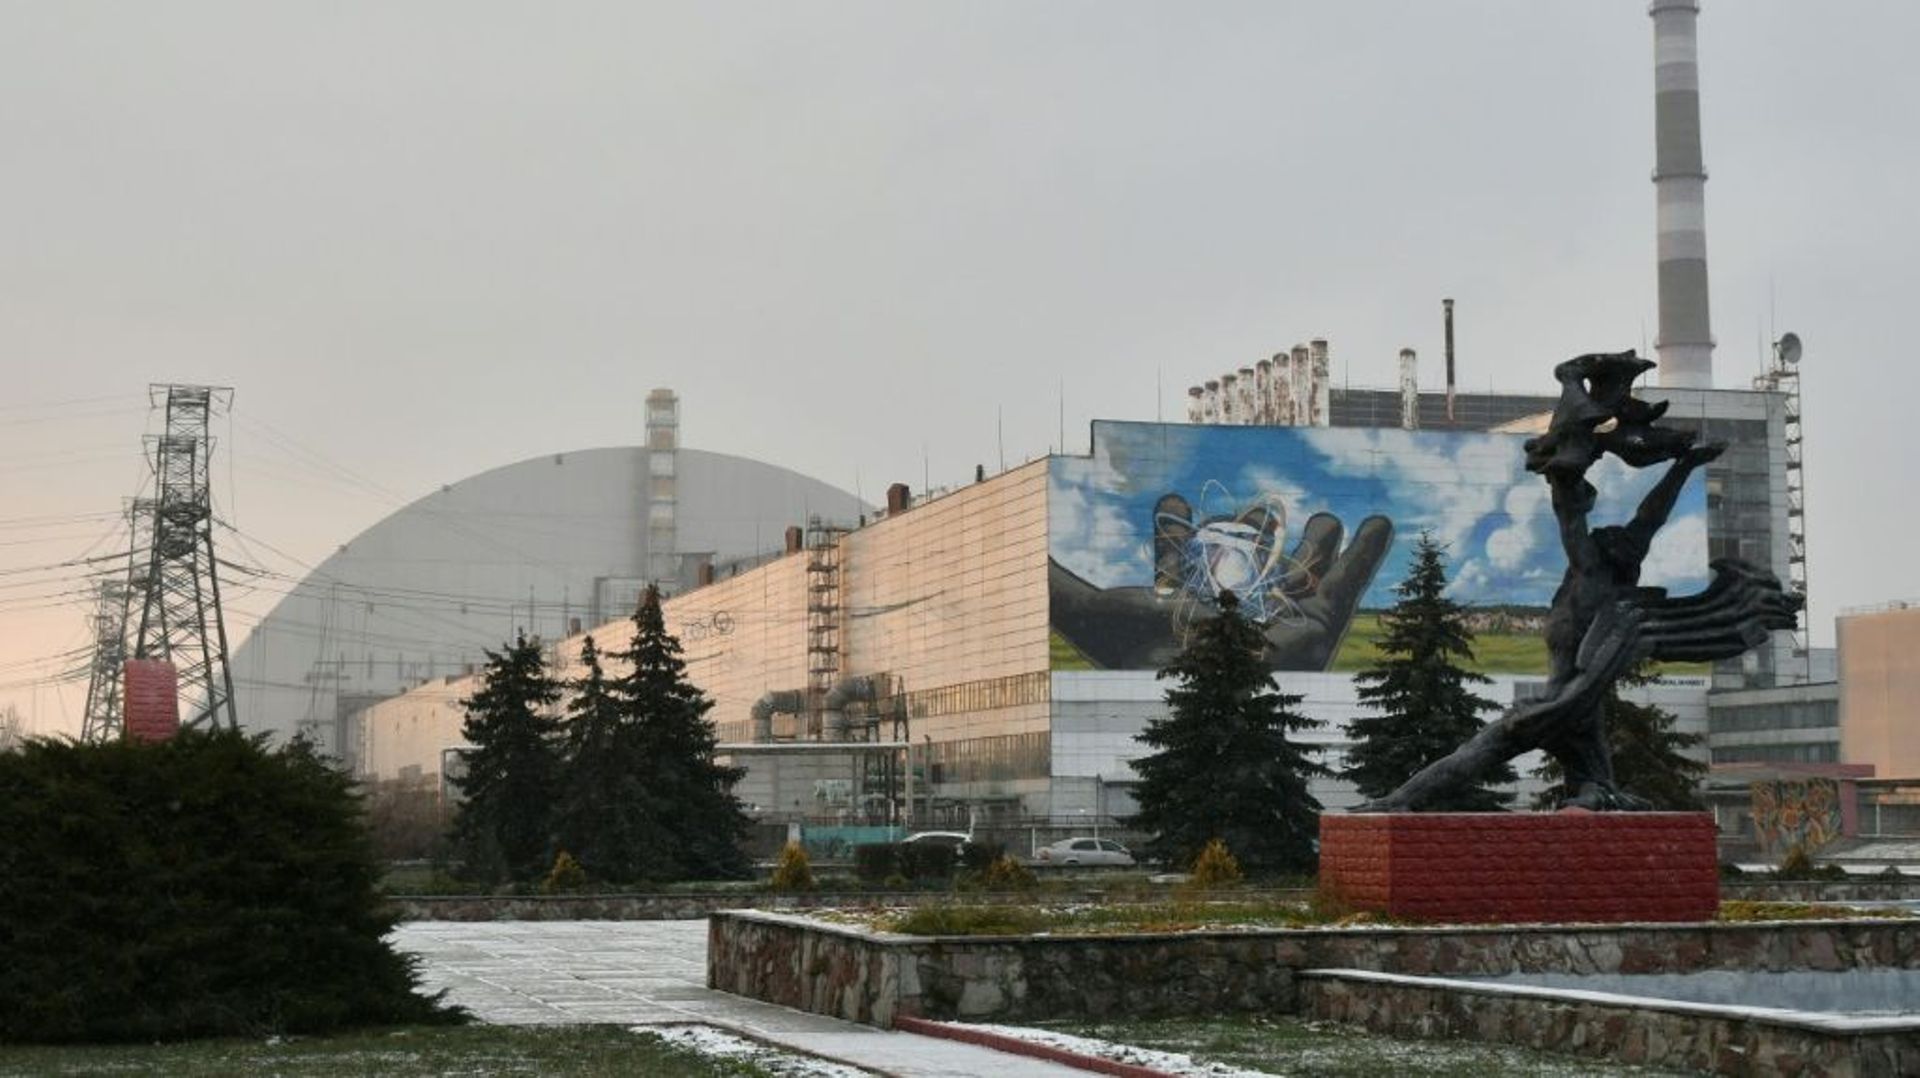 Le sarcophage au-dessus duq uatrième réacteur de la centrale nucléaire de Tchernobyl, en Ukraine, le 8 décembre 2020